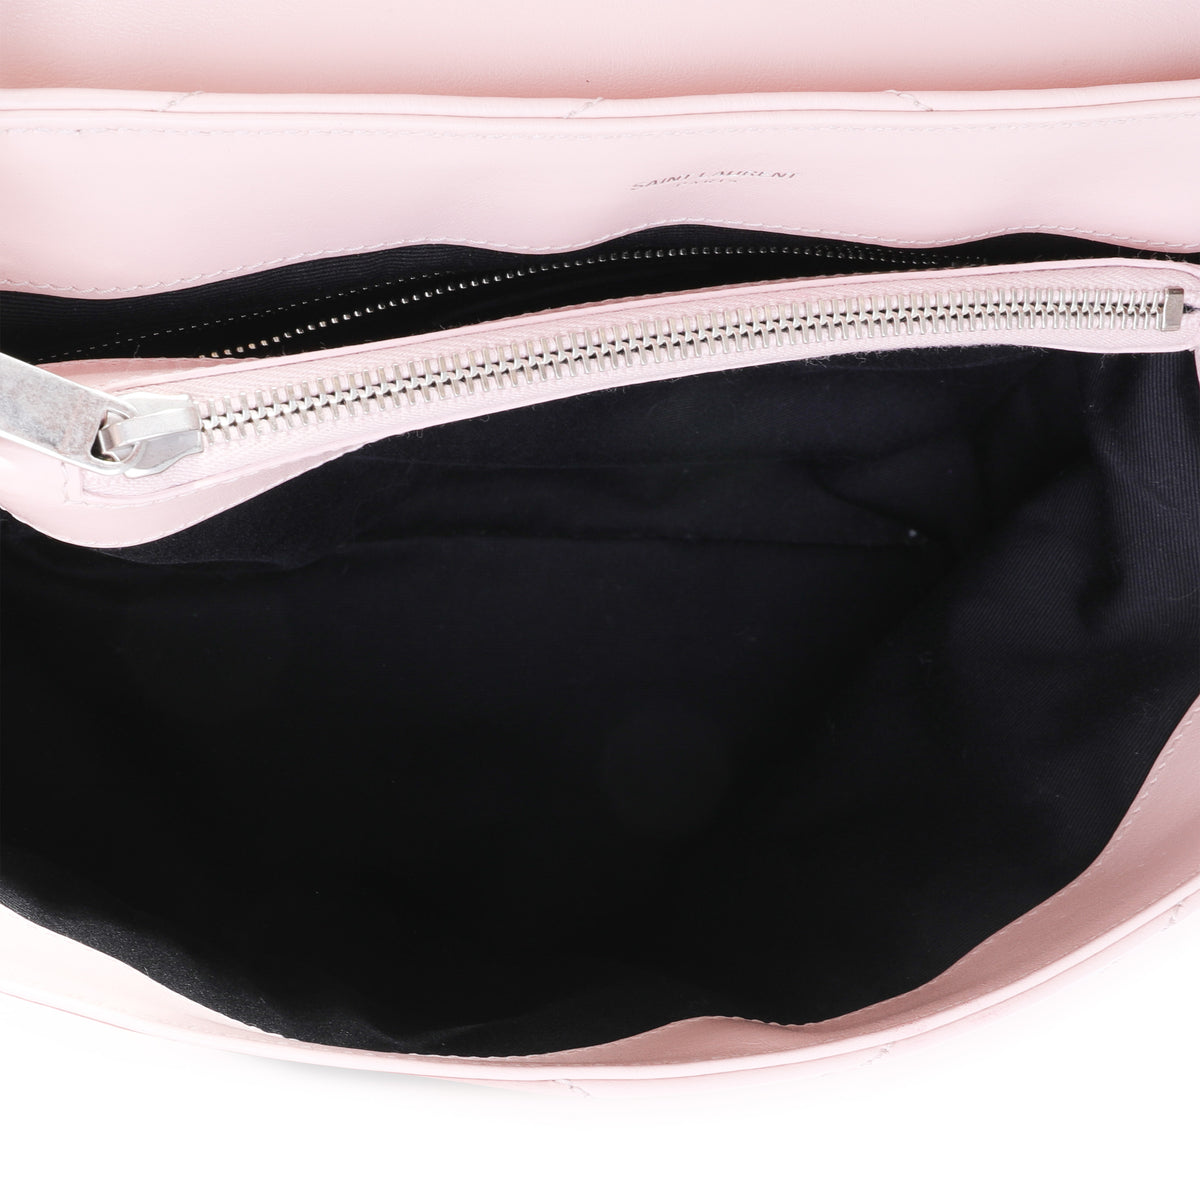 Saint Laurent Pink Matelassé Leather Medium Loulou Shoulder Bag